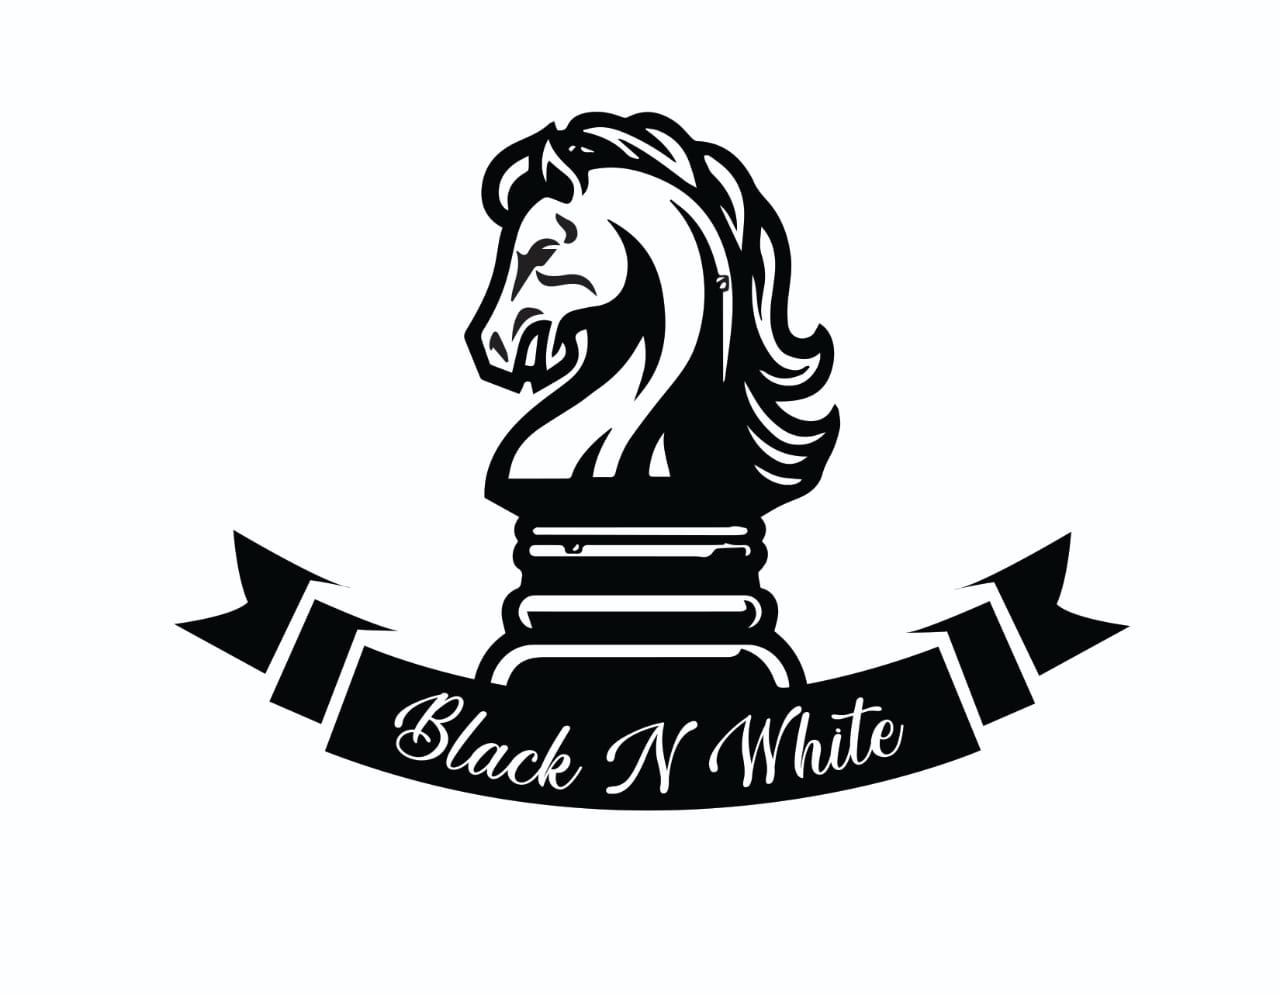 Black & White clothing